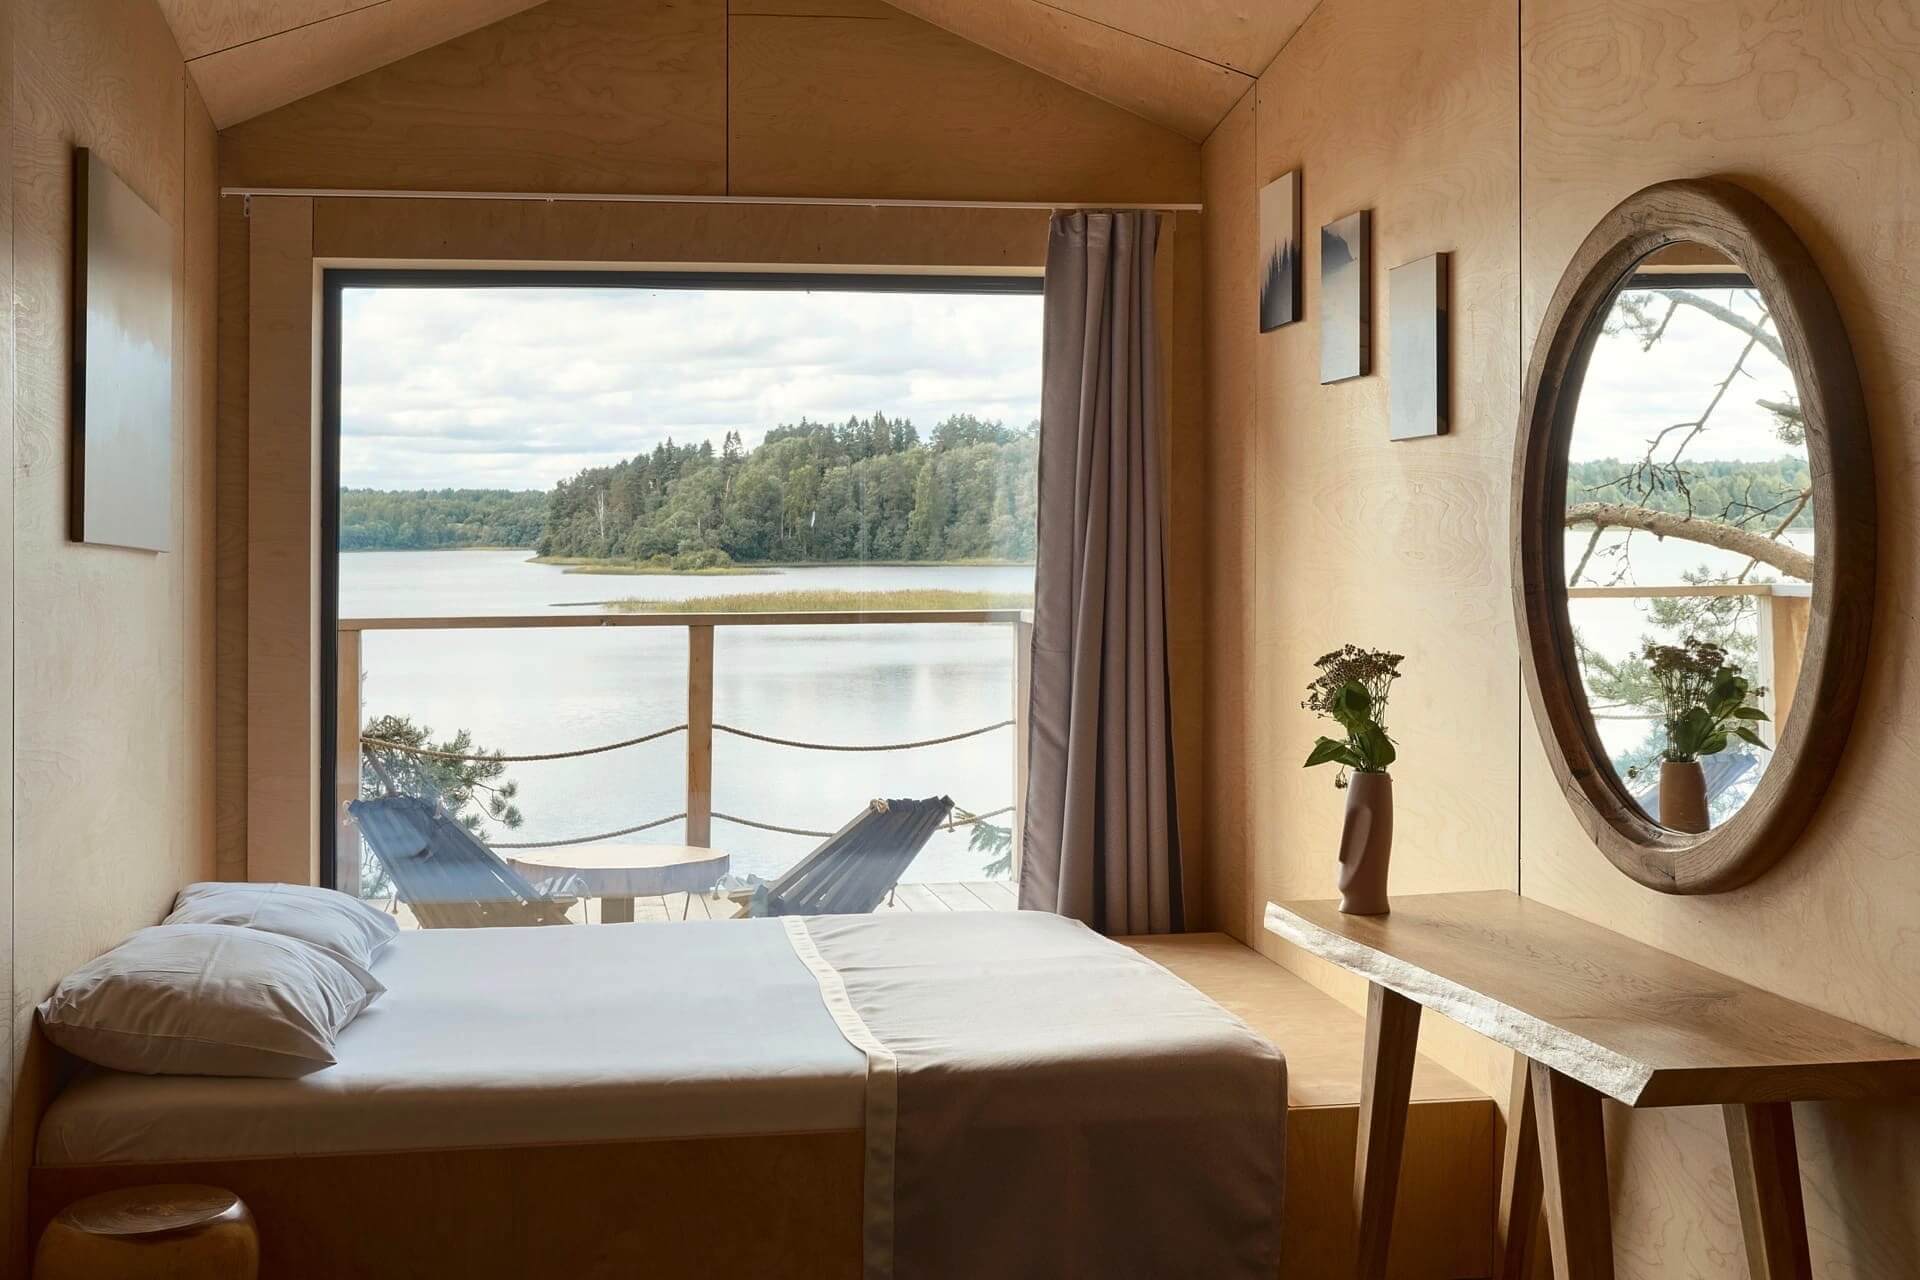 Спальное место обустроено рядом с большим панорамным окном.